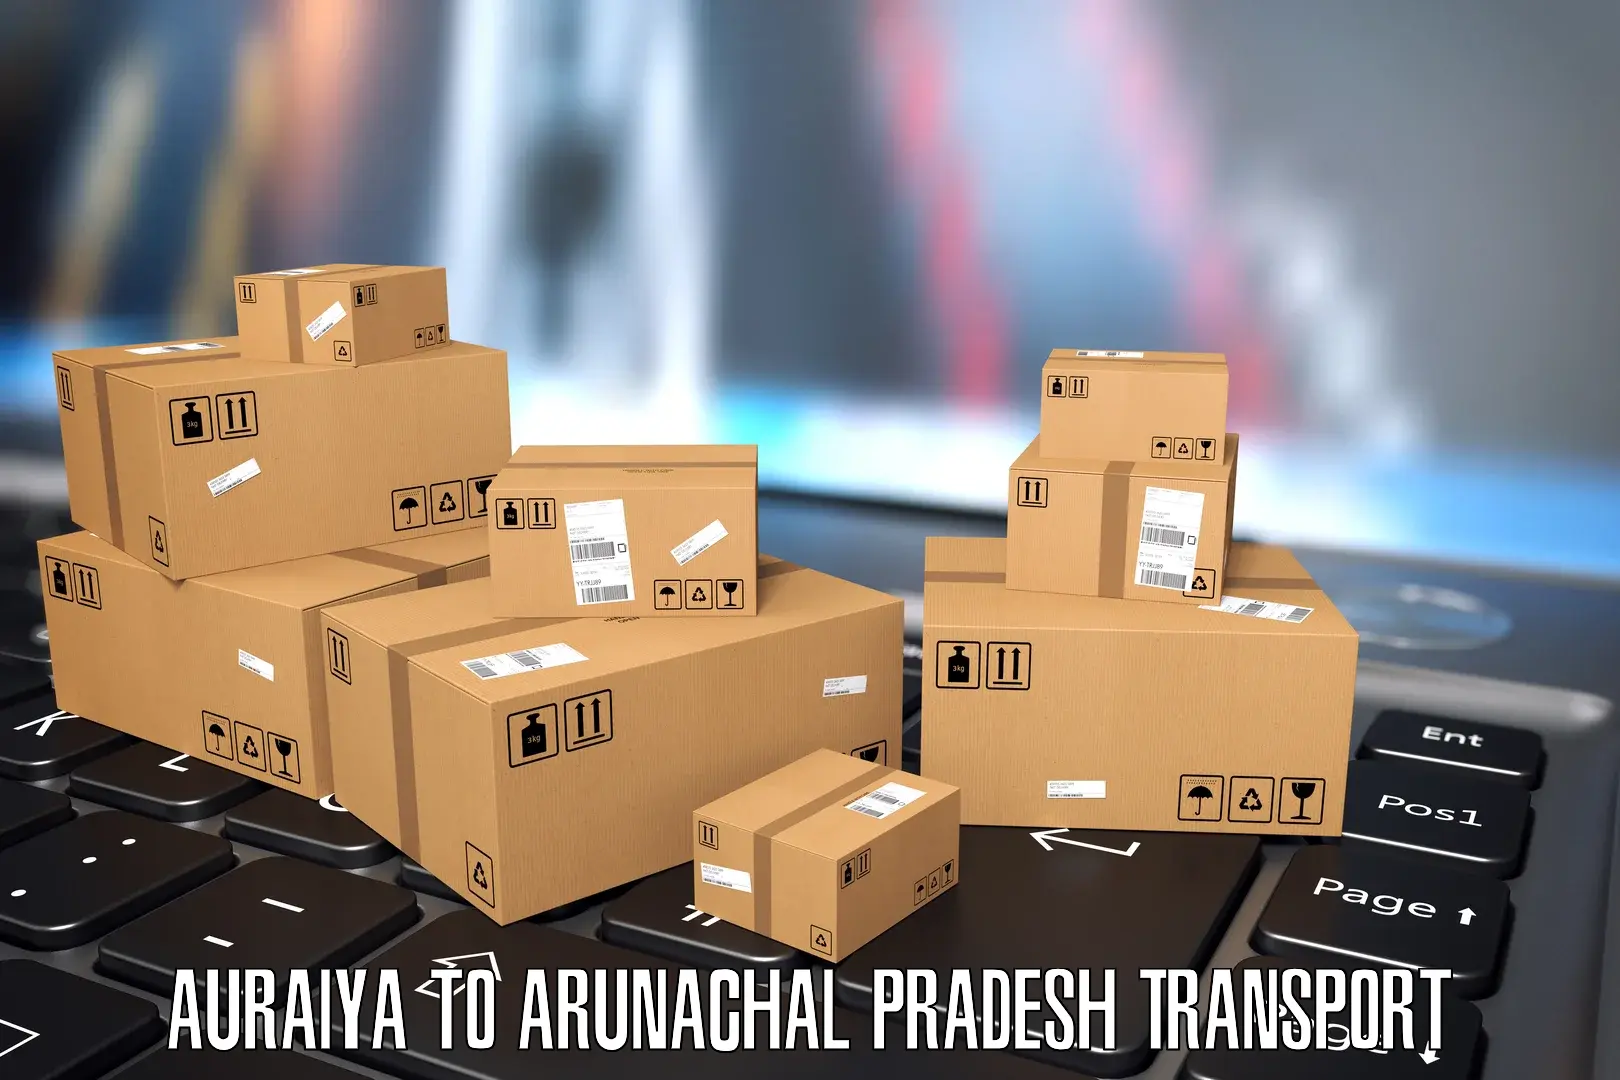 Interstate transport services Auraiya to Arunachal Pradesh